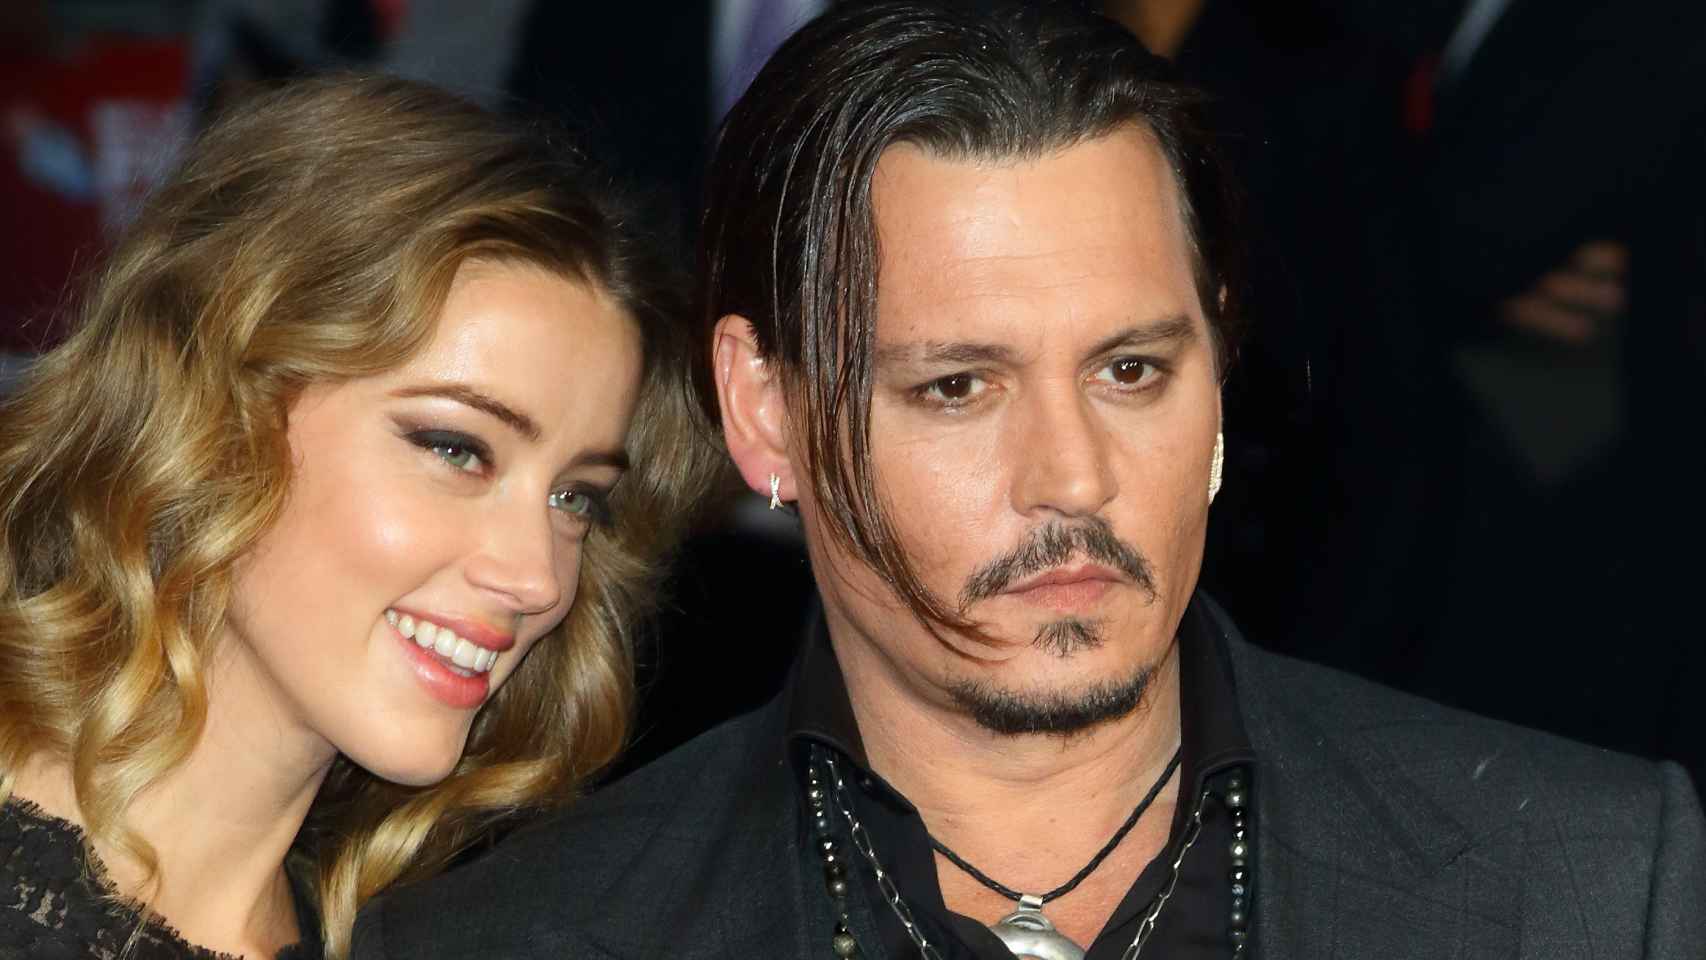 La carrera de Depp está en crisis tras la sentencia que considera probadas las agresiones a Amber Heard.